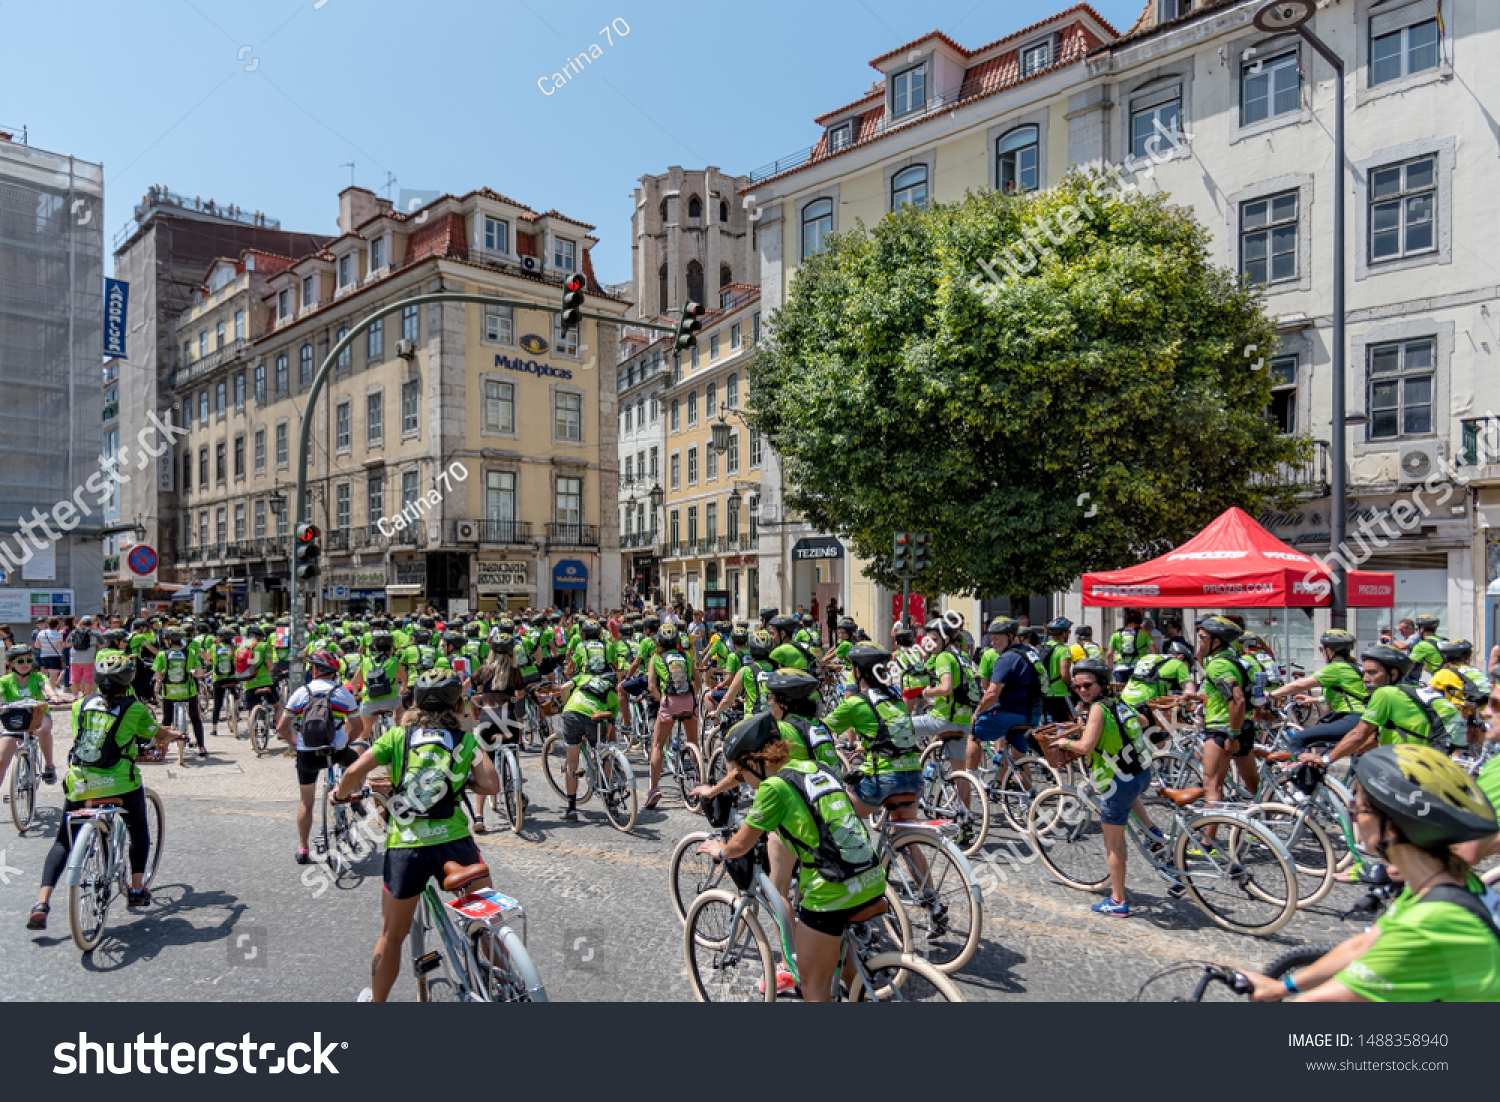 world bike tour 2019